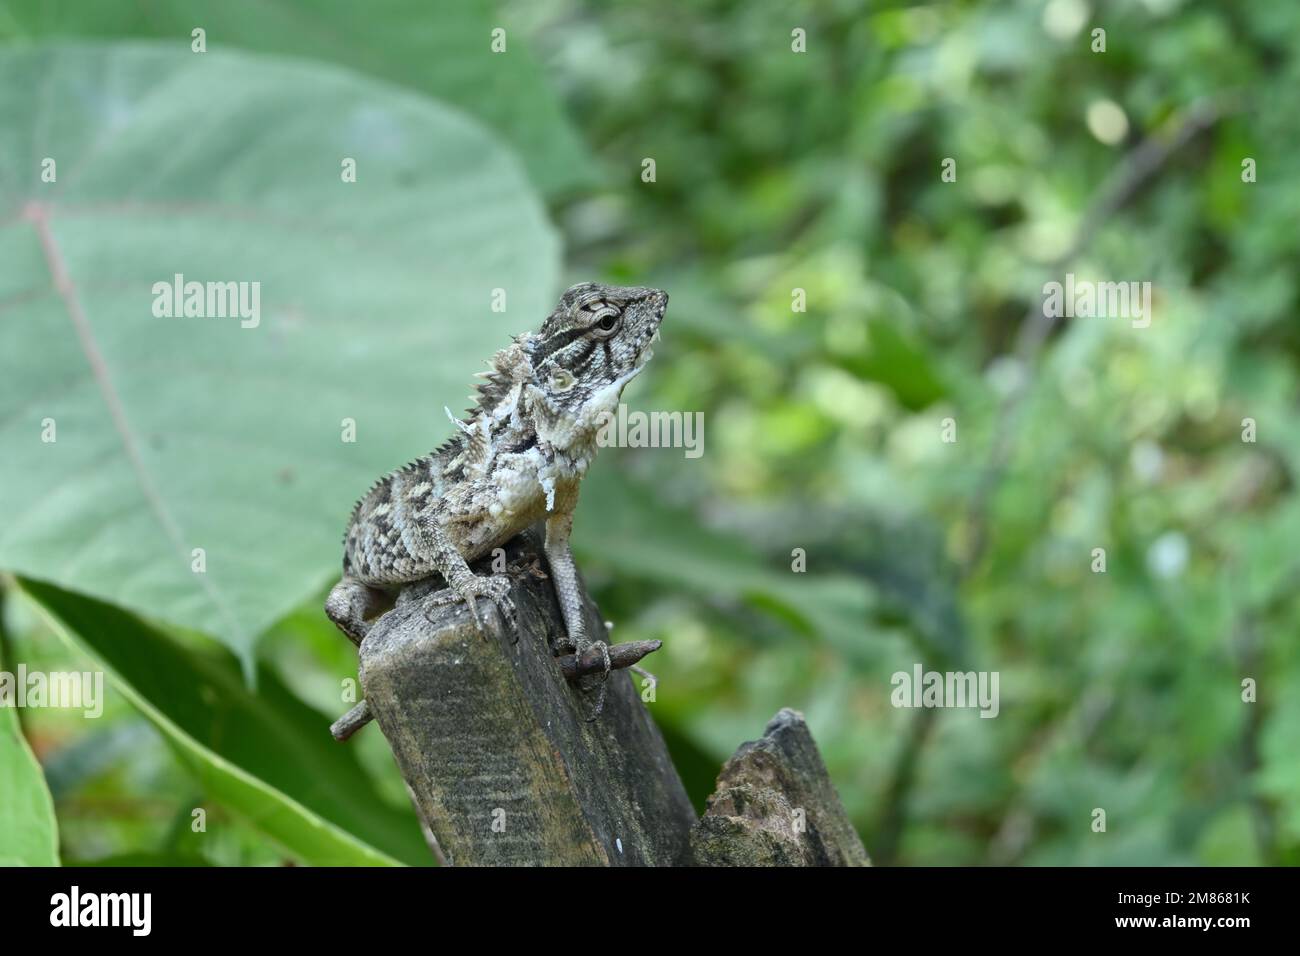 Cerca de un lagarto de jardín de color gris y negro con una cara curiosa con restos de piel vieja está sentado en la parte superior de un poste de madera en Sri Lanka Foto de stock